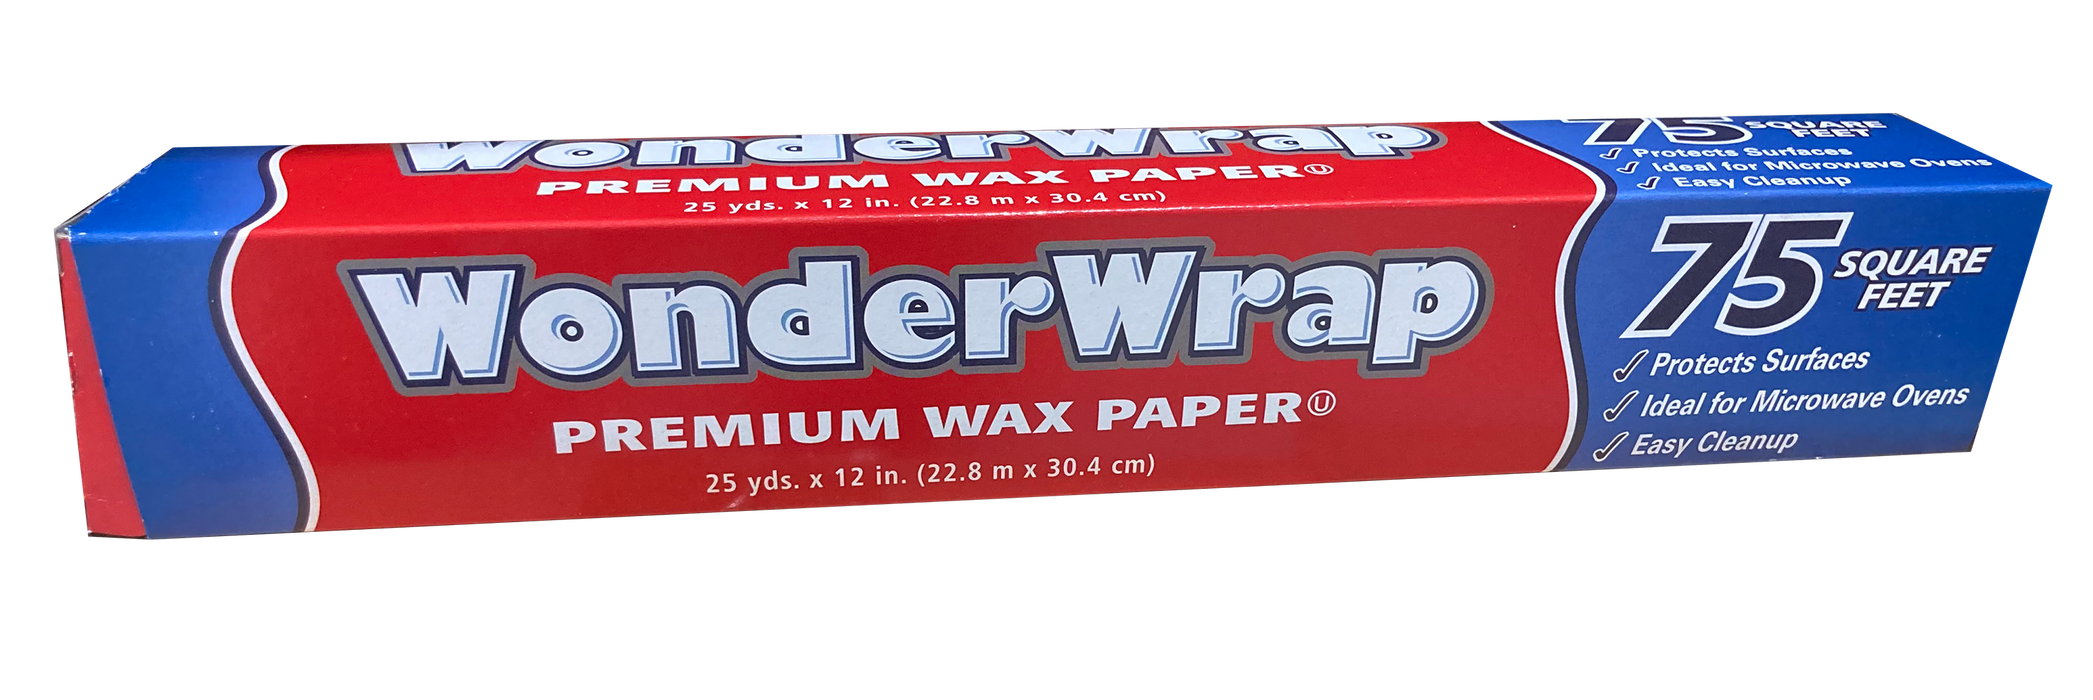 WonderWrap Wax Paper, 75 sq ft